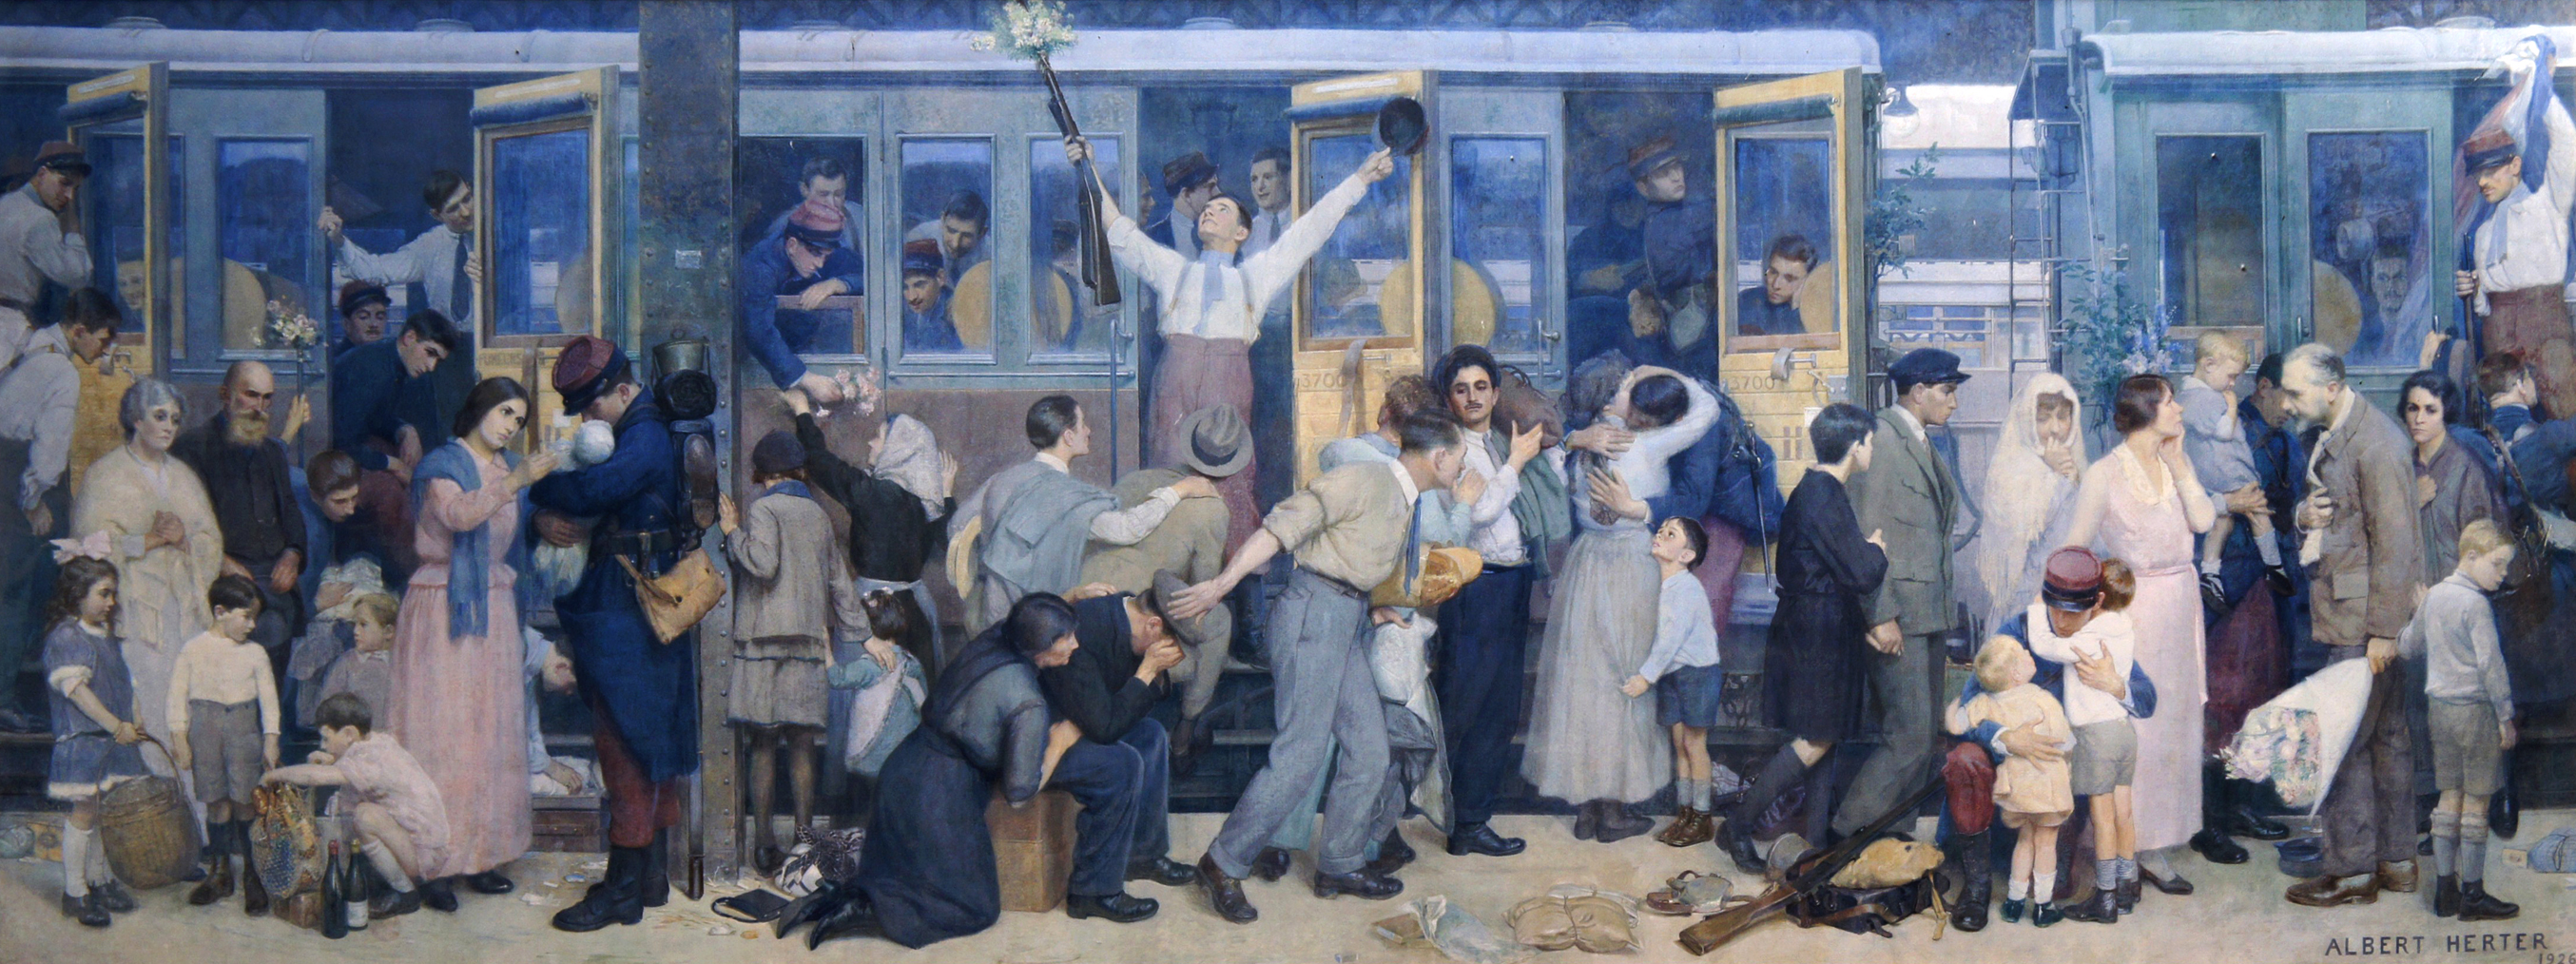 Albert Herter, 'Le Départ des poilus, août 1914', gare de l'Est, 1926 @ Mairie de Paris